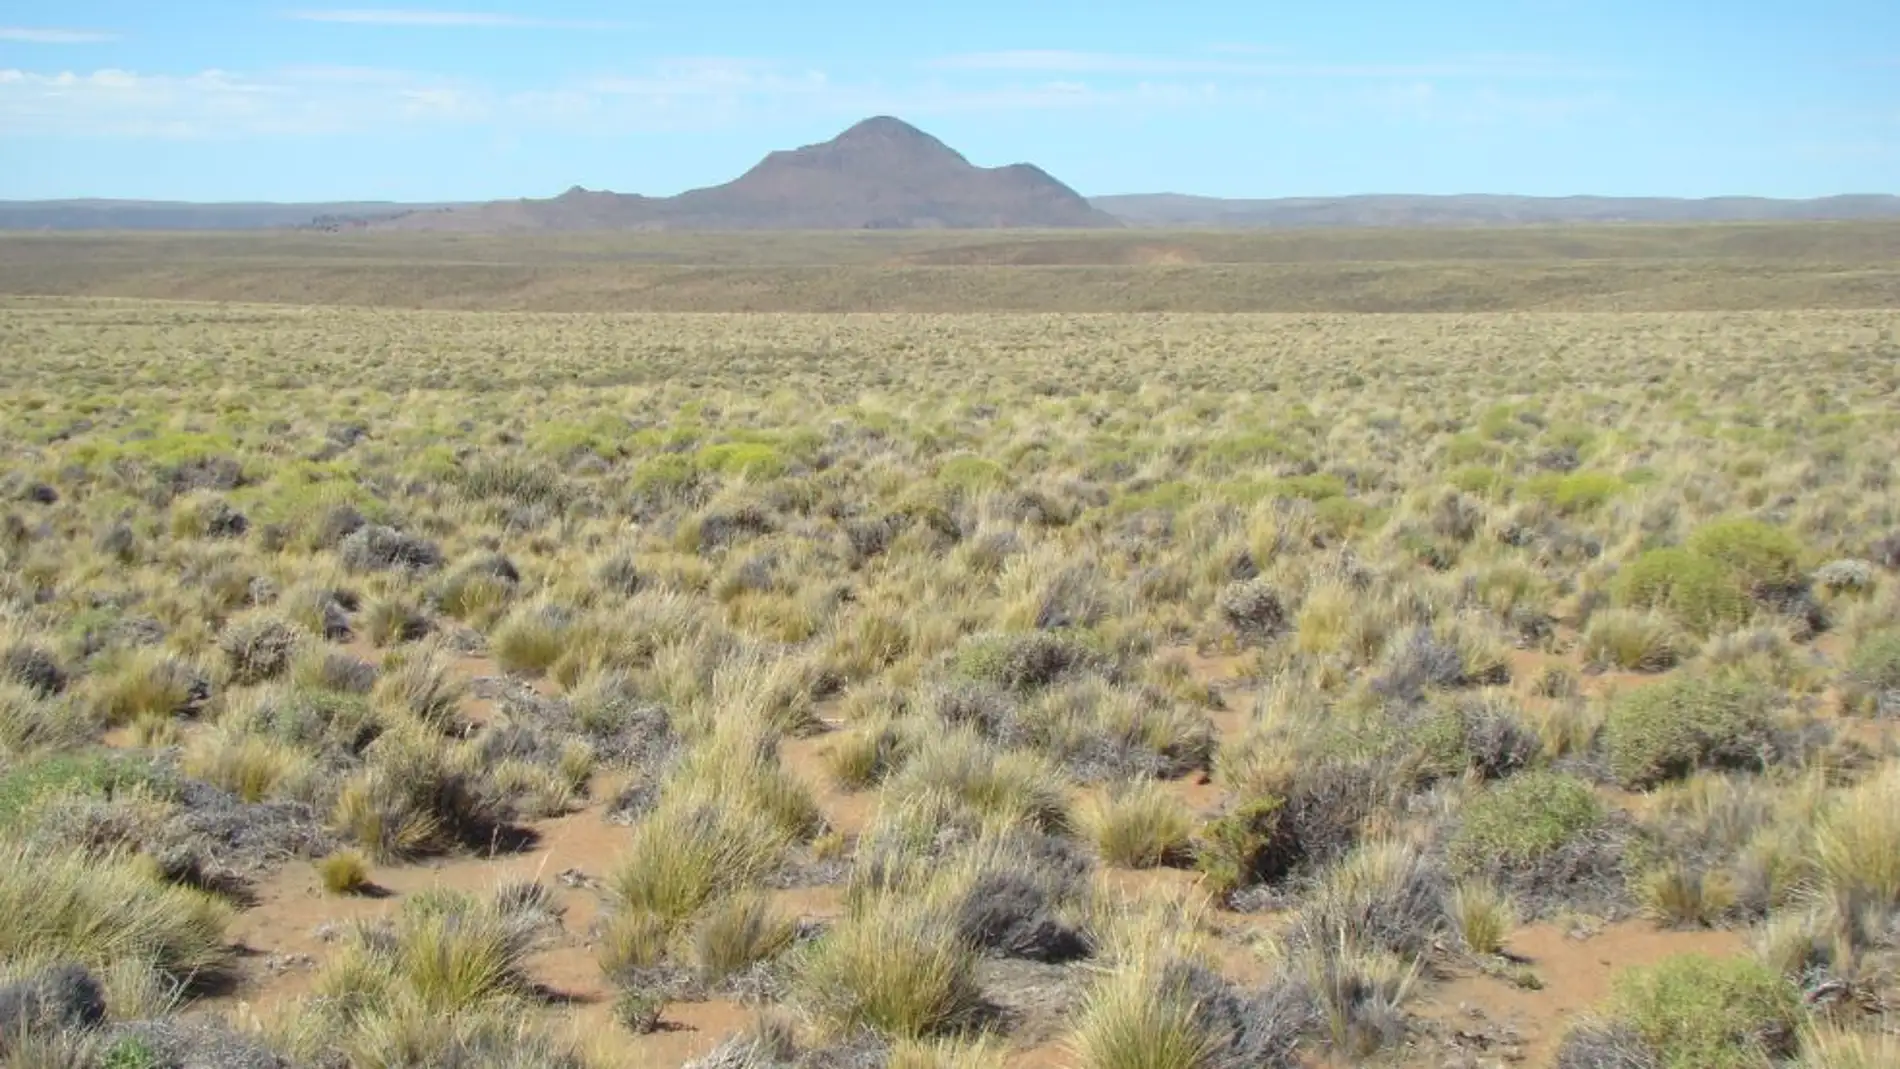 La crisis climatica provocara cambios drasticos en los ecosistemas aridos